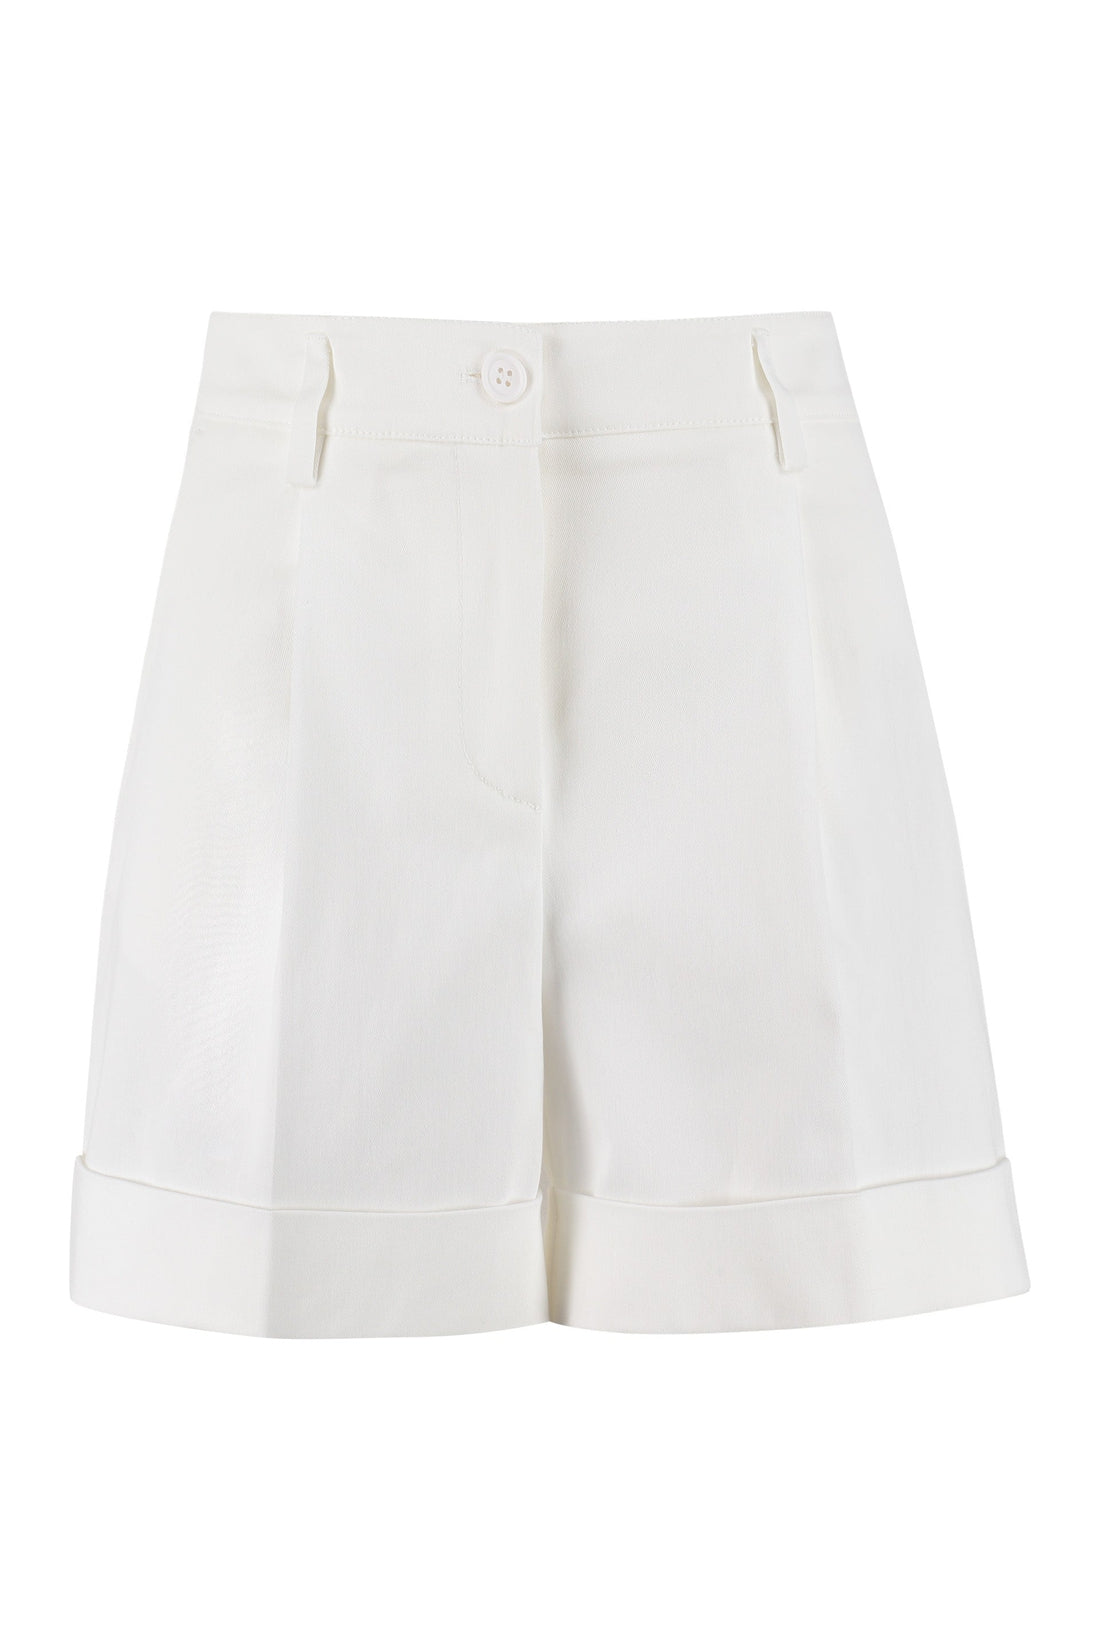 Parosh-OUTLET-SALE-Cotton shorts-ARCHIVIST